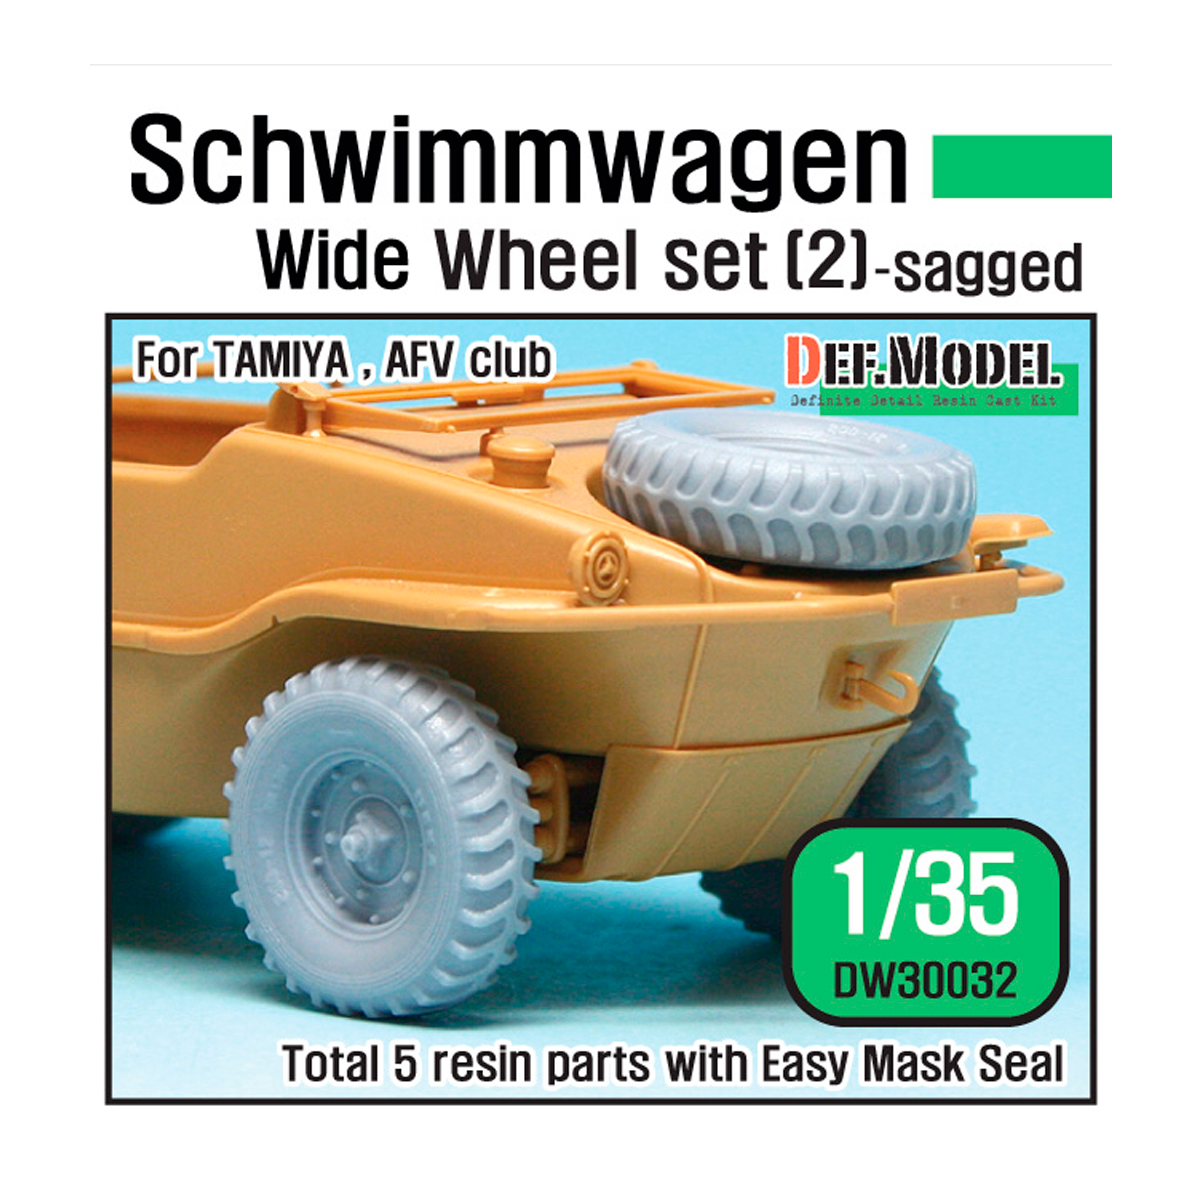 German Schwimmwagen Wide Wheel set 2 – DEKA (for Tamiya 1/35)